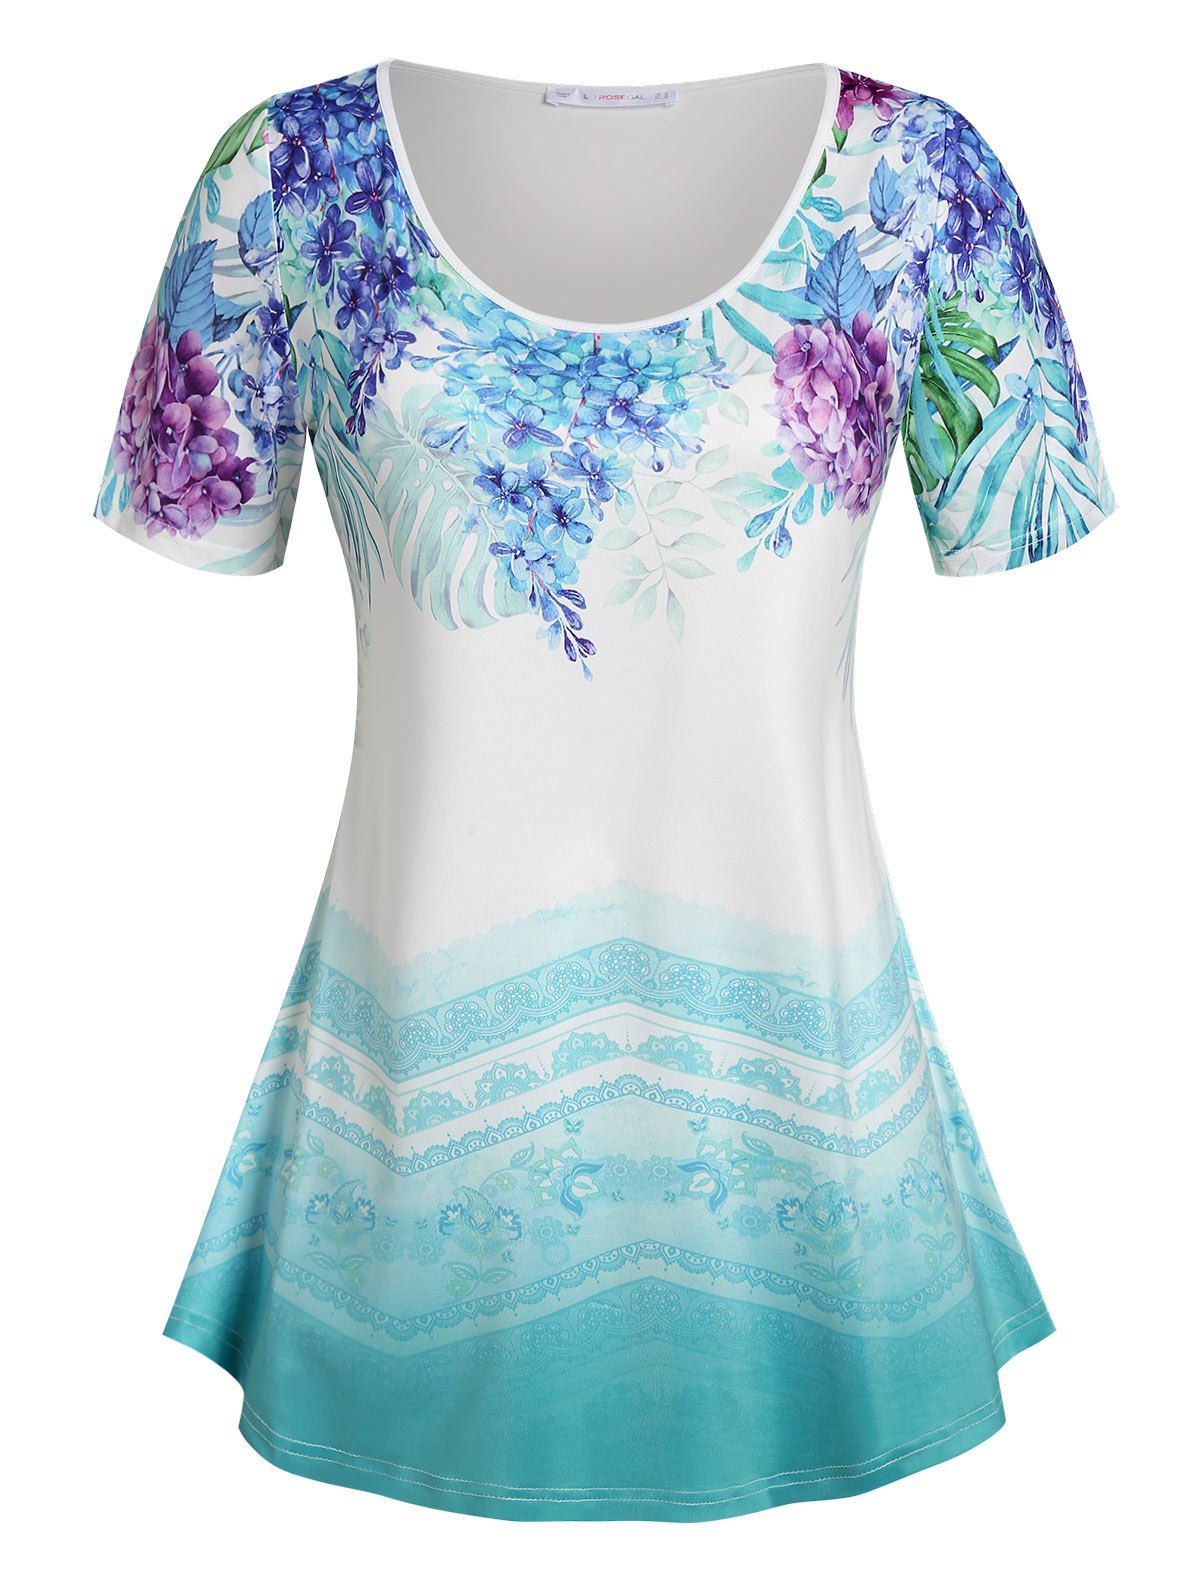 T-shirt Ombre à Imprimé Floral Grande Taille - Bleu clair L